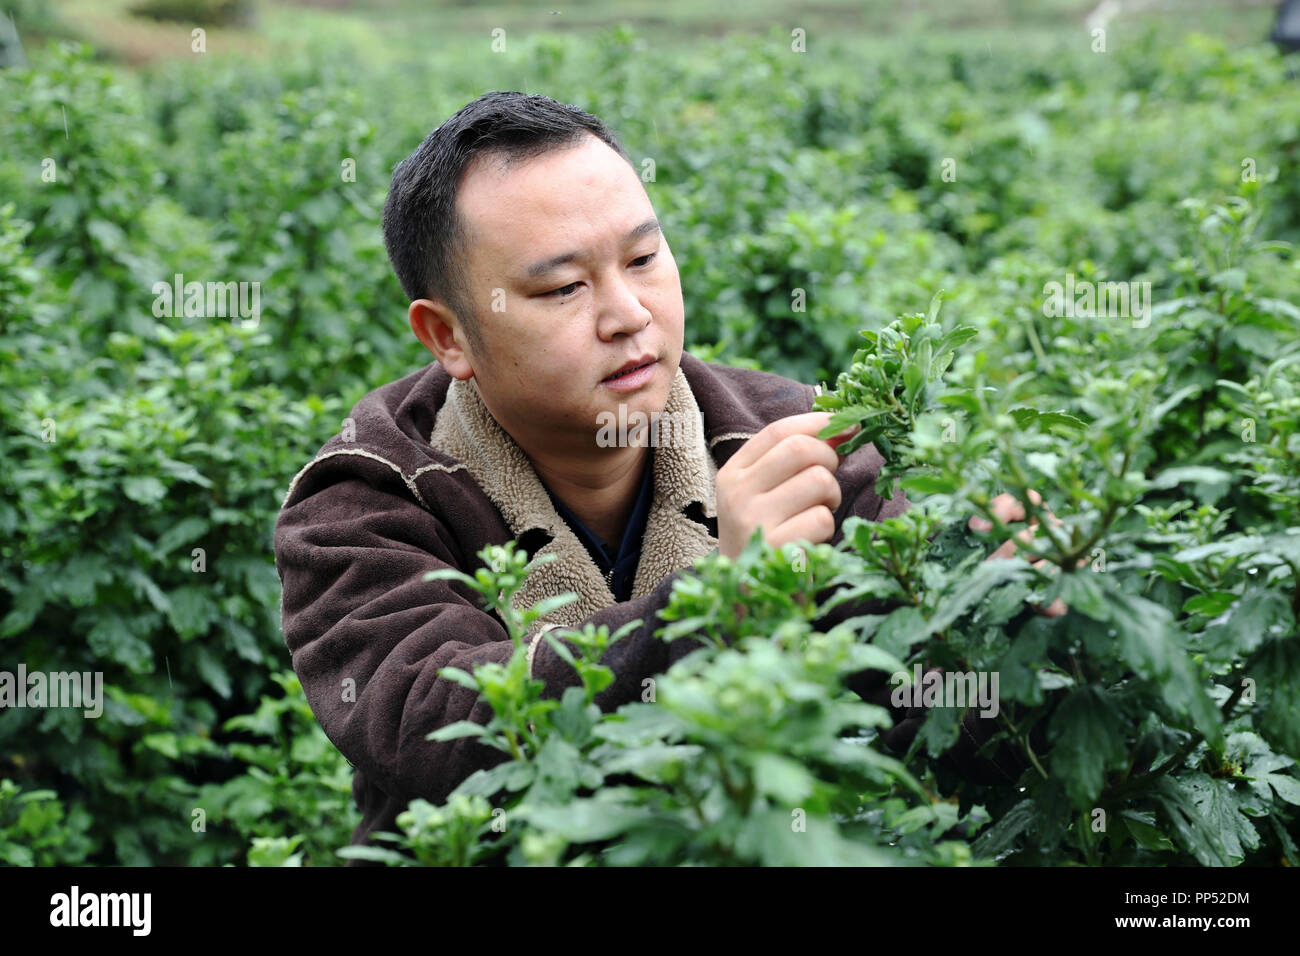 Chongqing, Chine. 23 sept 2018. Jian Yixiang vérifie les conditions de croissance des chrysanthèmes jaunes à Wood Village, Canton de Lin'e ème arrondissement Qianjiang, au sud-ouest de la municipalité de Chongqing en Chine, du 22 septembre 2018. Jian, 34 ans, est né dans le village de Chongqing. À la fin de 2009, il a quitté son emploi au centre-ville de Chongqing et retournèrent à la maison pour prendre soin de sa mère illed, au cours de laquelle il a commencé à croître tremella. Source : Xinhua/Alamy Live News Banque D'Images